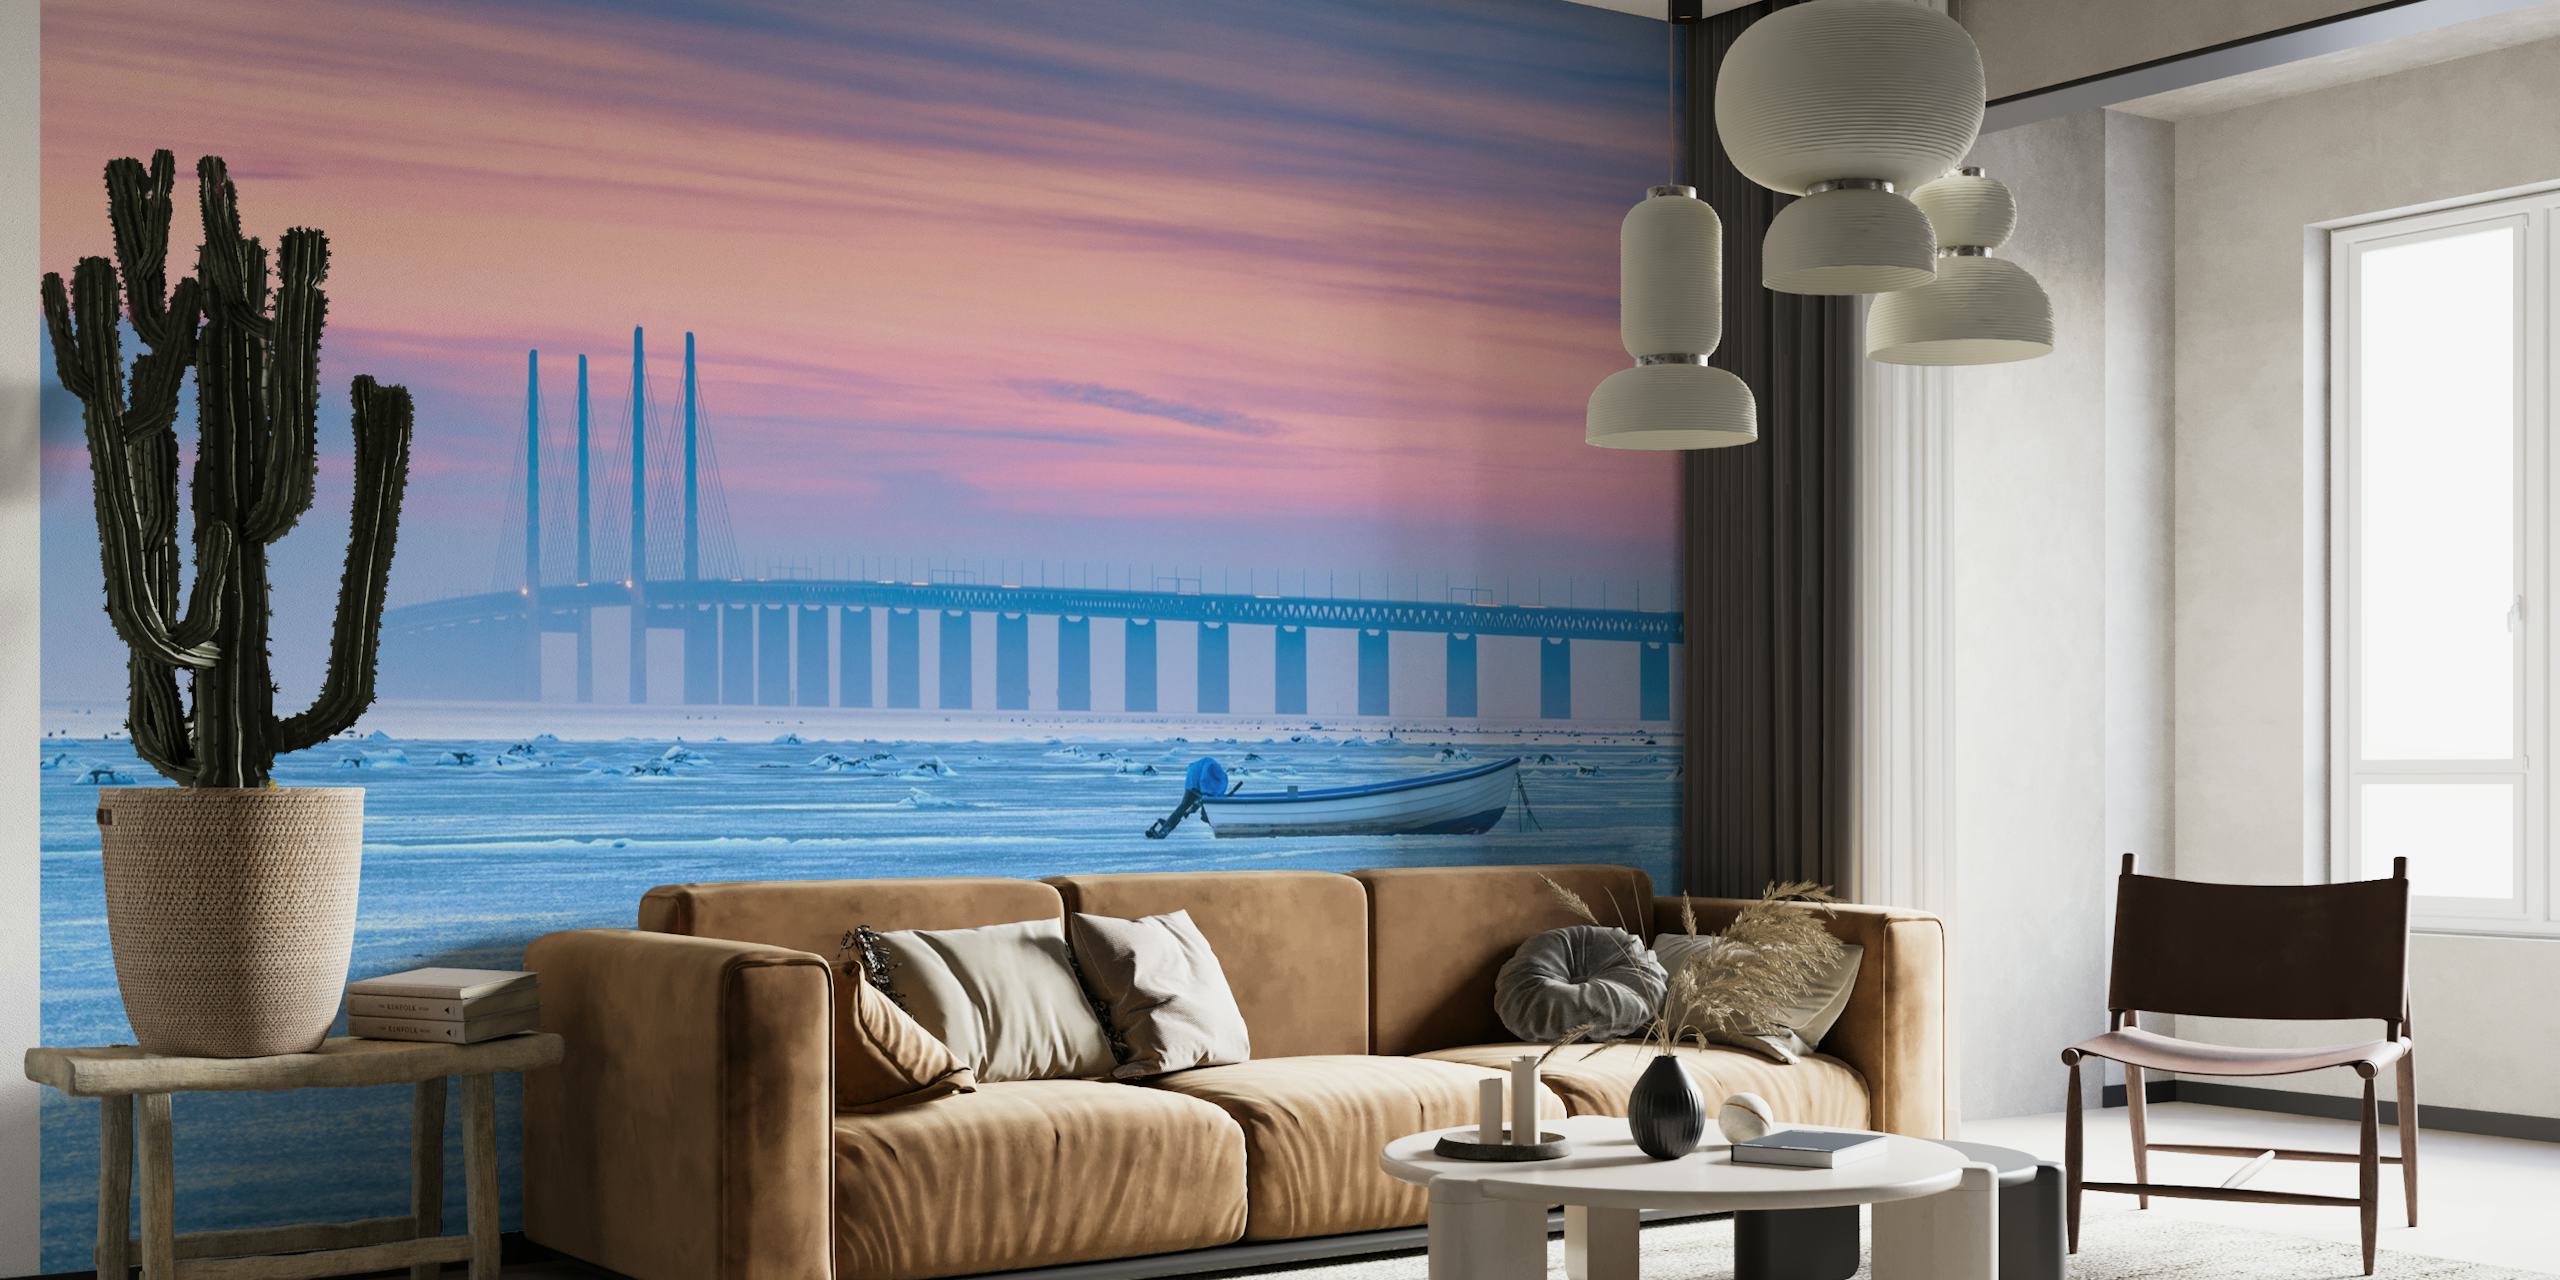 Zidni mural koji prikazuje zaleđeno more s mirnim pastelnim nebom, udaljenim mostom i usamljenim čamcem